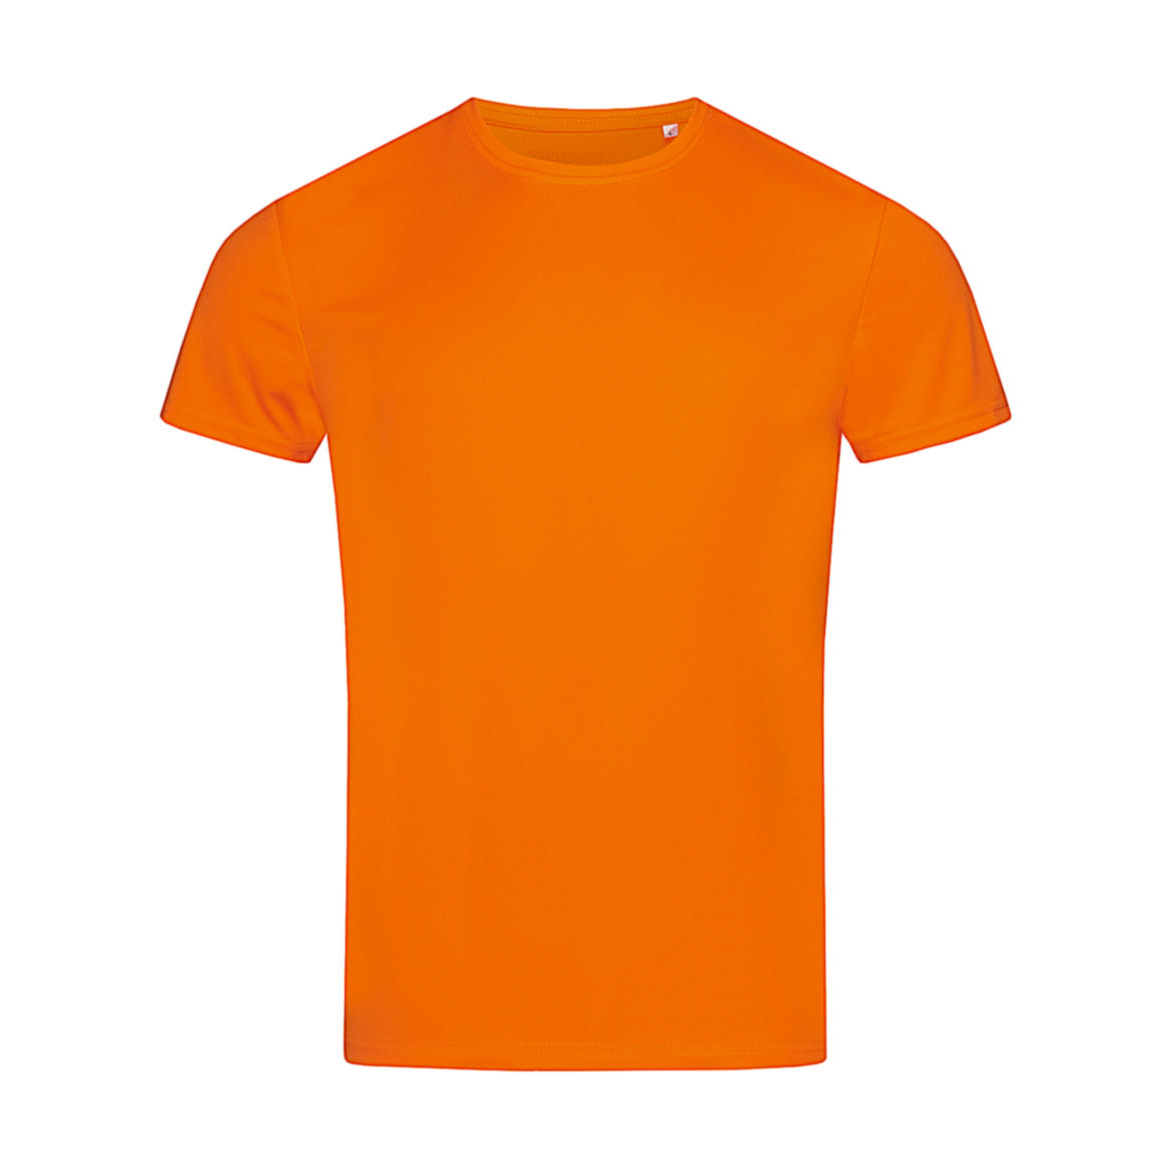 Triko pánské Stedman sportovní tričko - oranžové, L